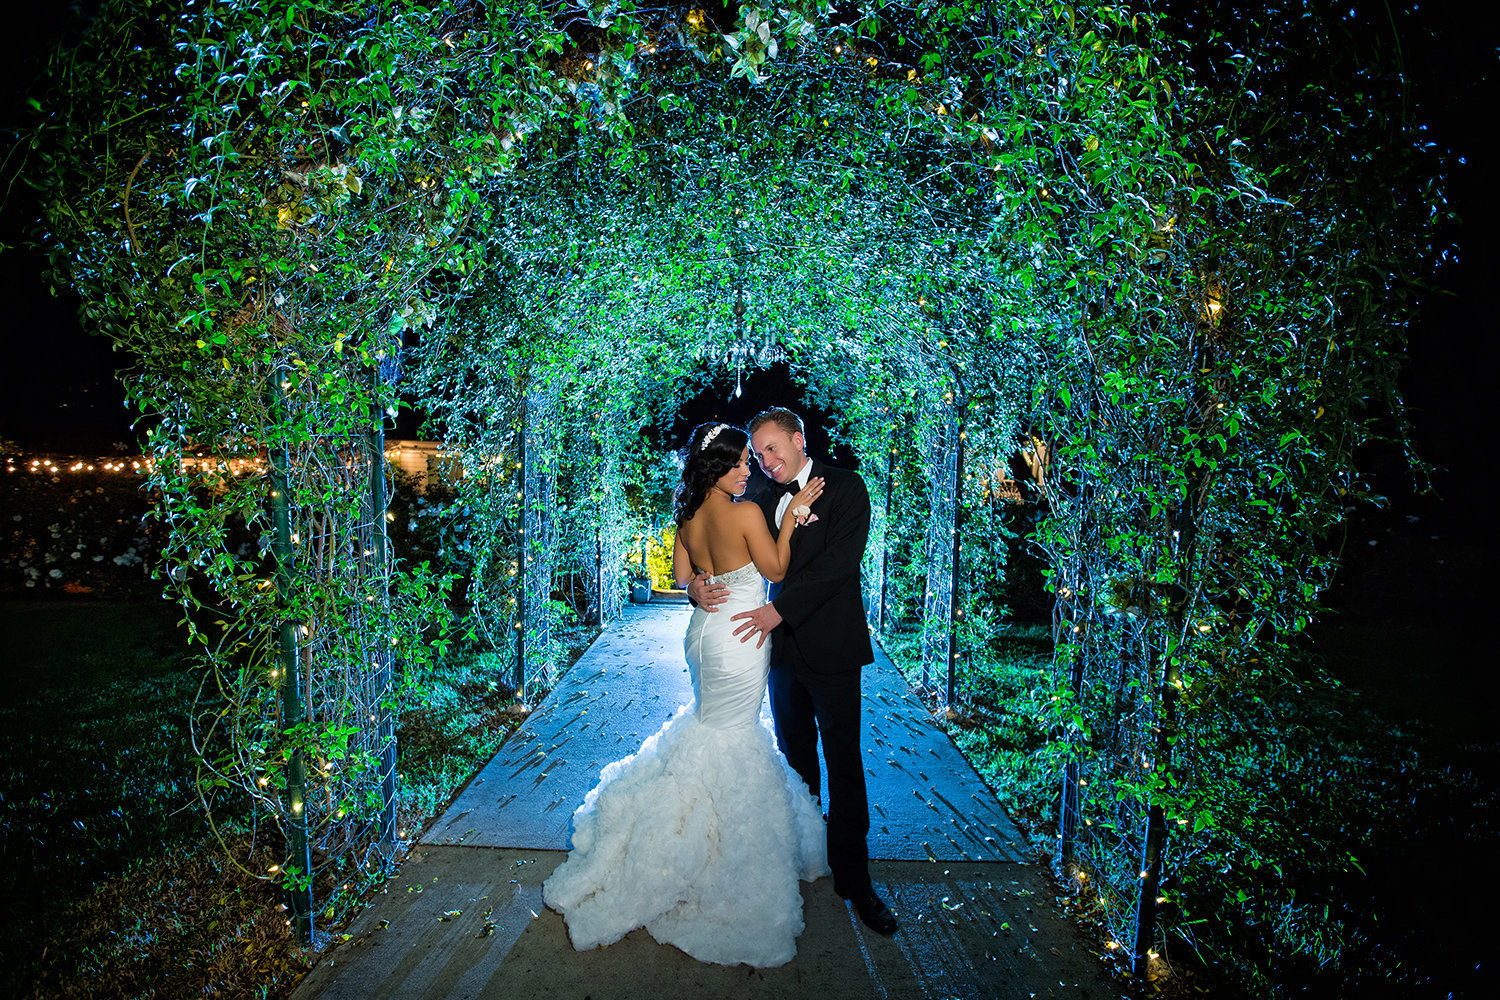 Green Gables wedding photos stunning night shot